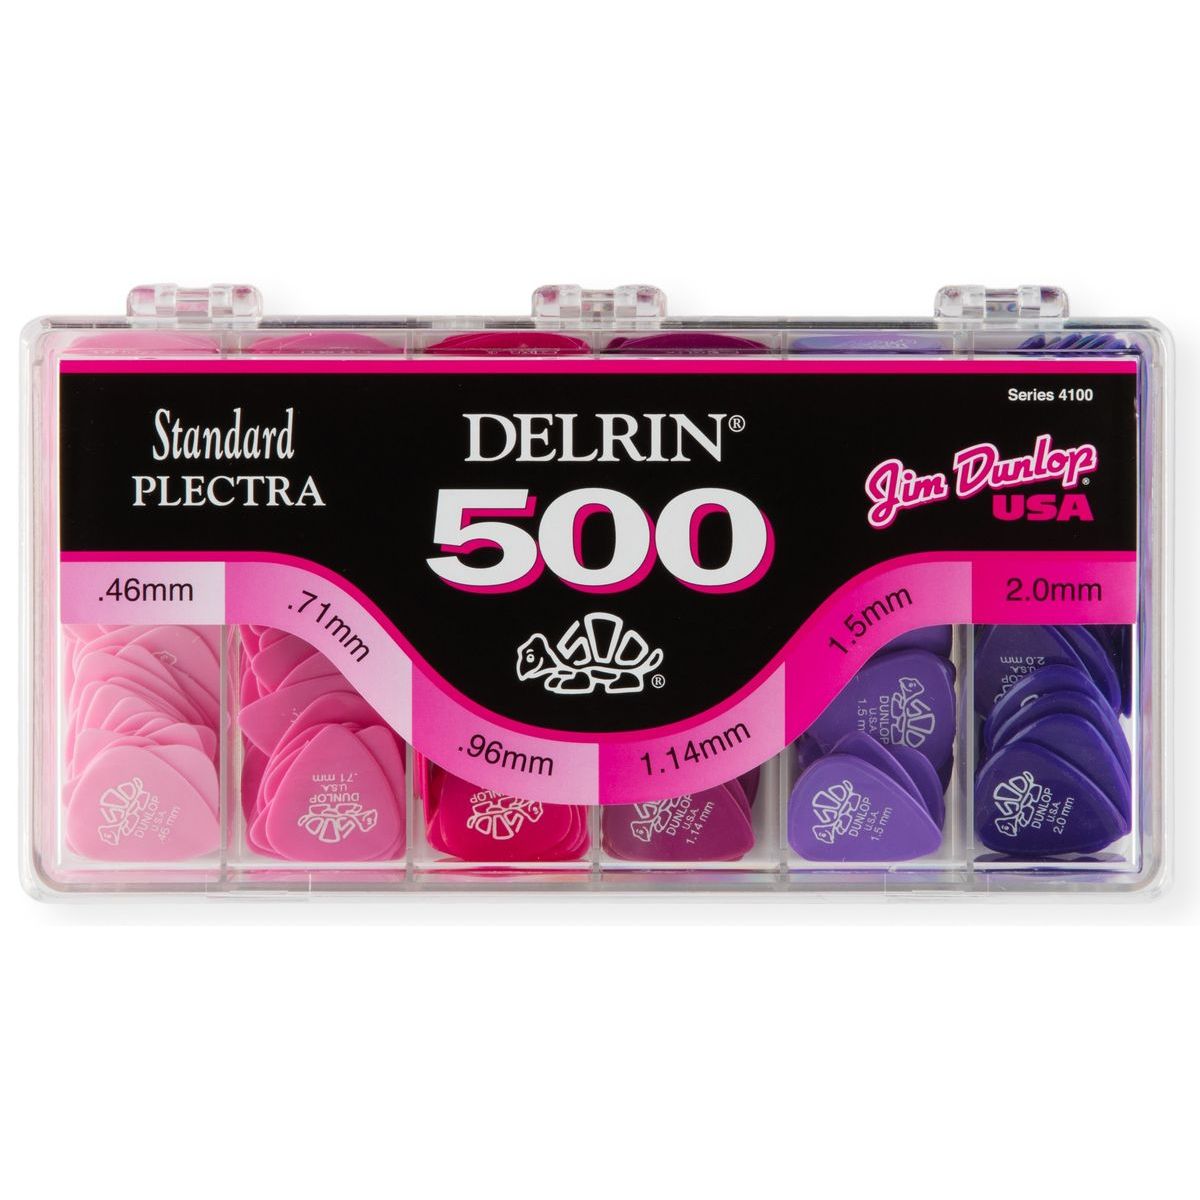 Медиаторы Dunlop 4100 Delrin 500 Display (324 шт) медиаторы dunlop 4461 nylon glow display 216 шт